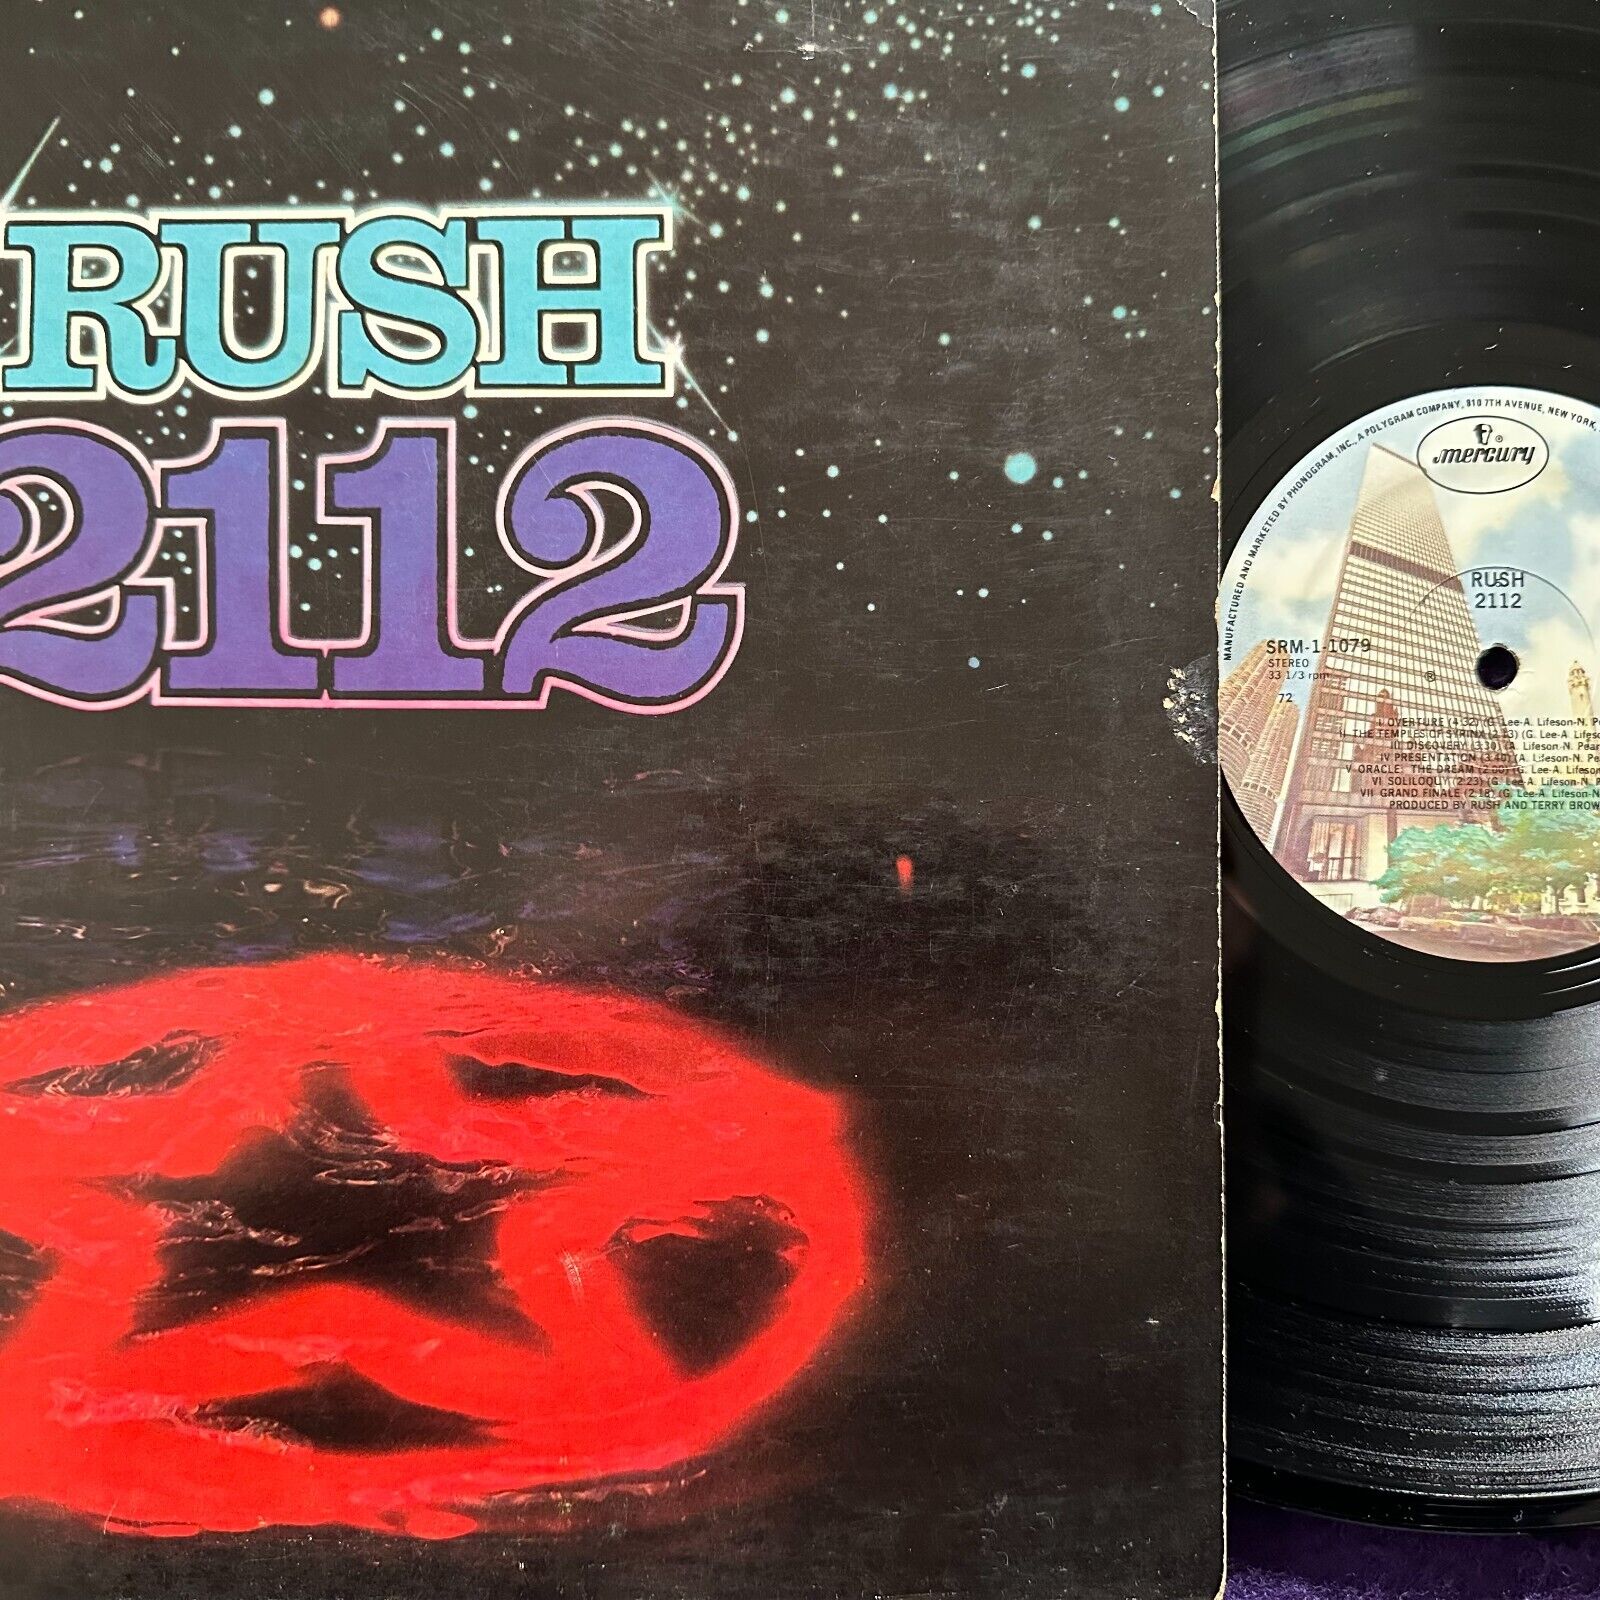 RUSH 2112 LP '76 MERCURY Original SRM-1-1079 Rock MASTERDISK Gatefold EX+